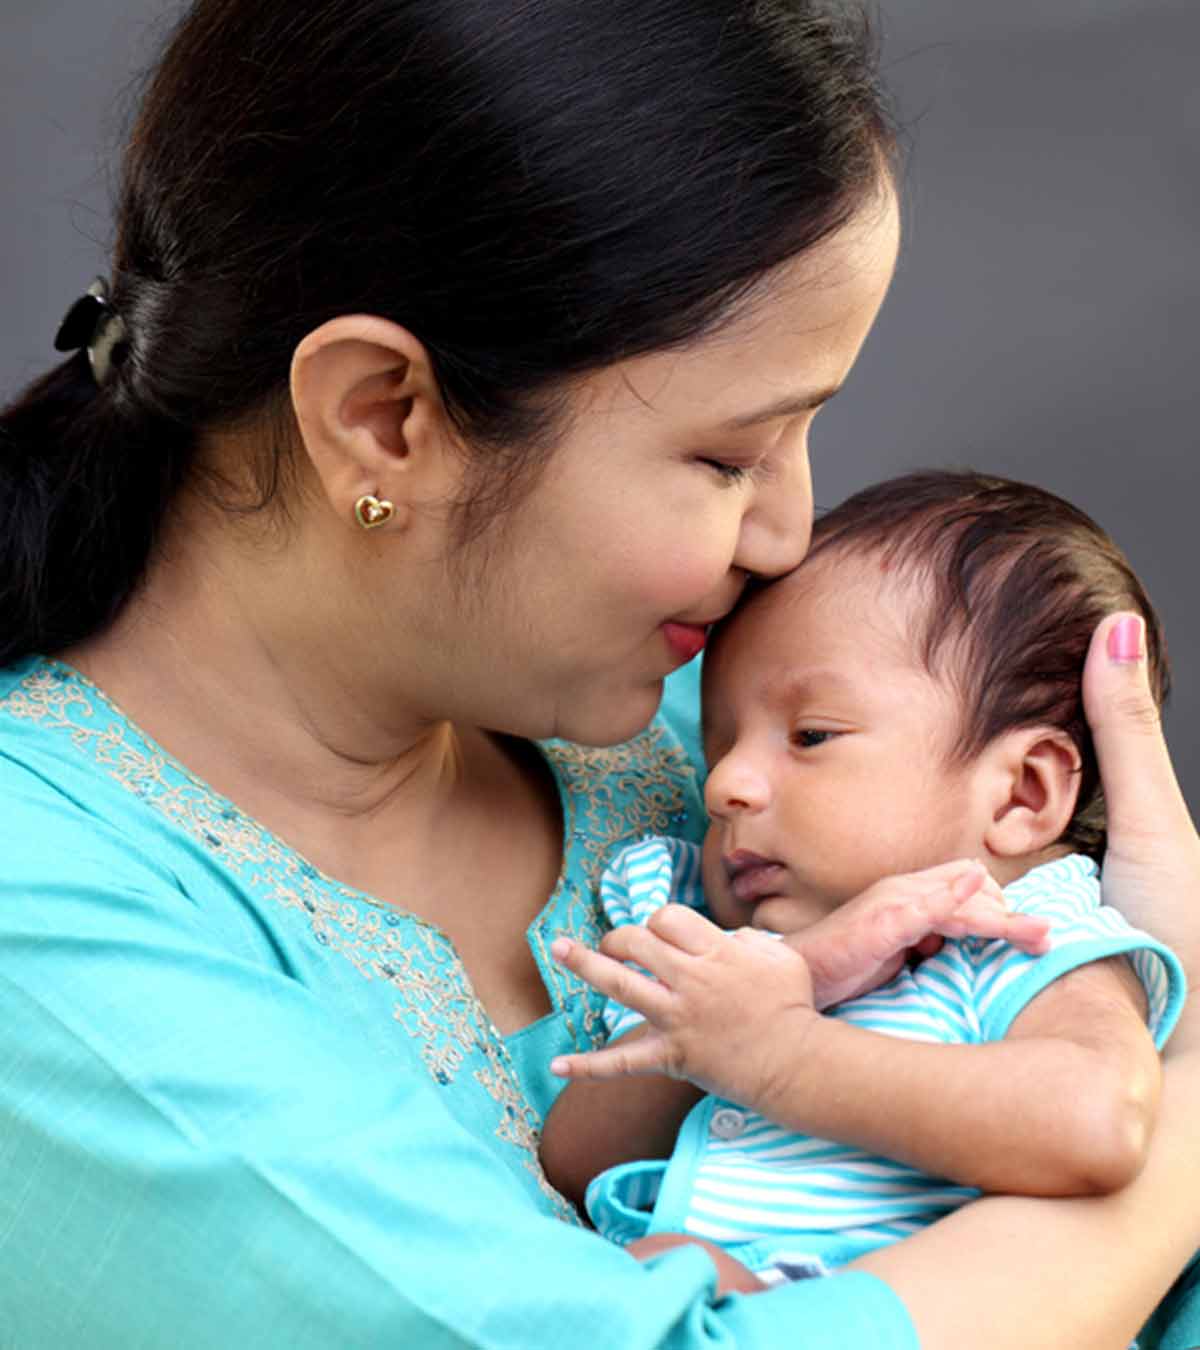 नवजात शिशु की देखभाल के लिए 10 जरूरी टिप्स | Navjat Shishu Ki Dekhbhal Kaise Kare